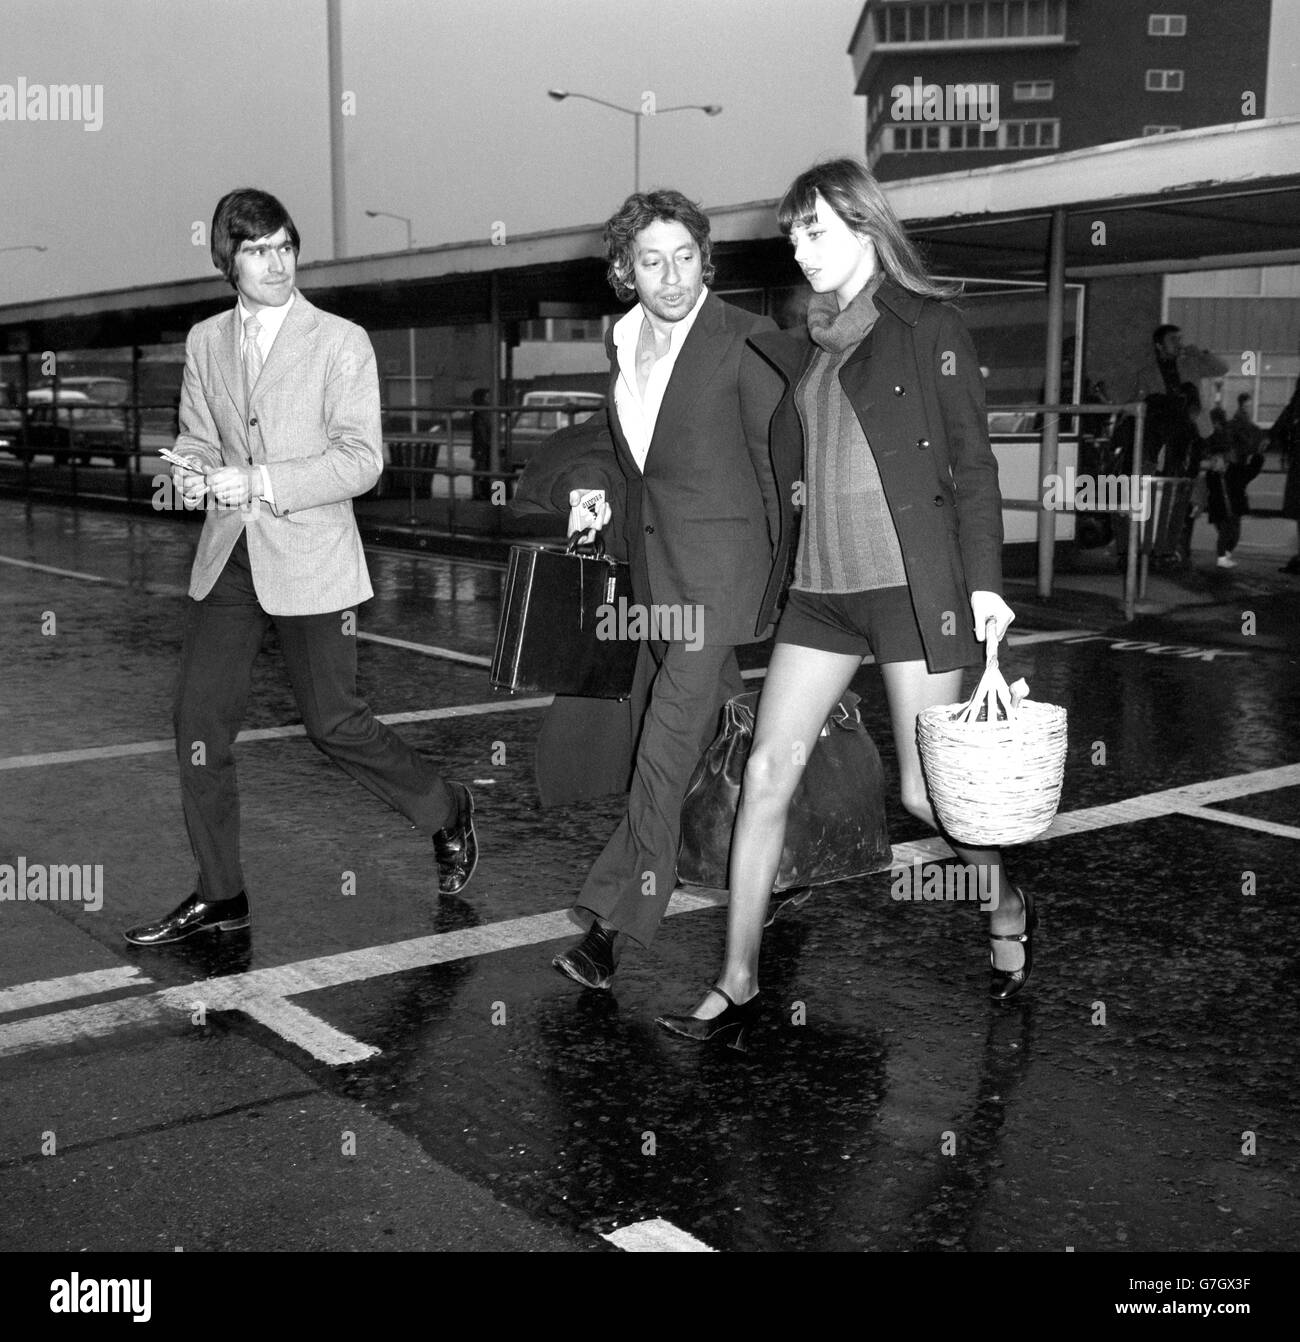 Jane Birkin et Serge Gainsbourg - aéroport de Heathrow, Londres.L'actrice Jane Birkin avec Serge Gainsbourg à l'aéroport Heathrow de Londres après son arrivée de Paris. Banque D'Images